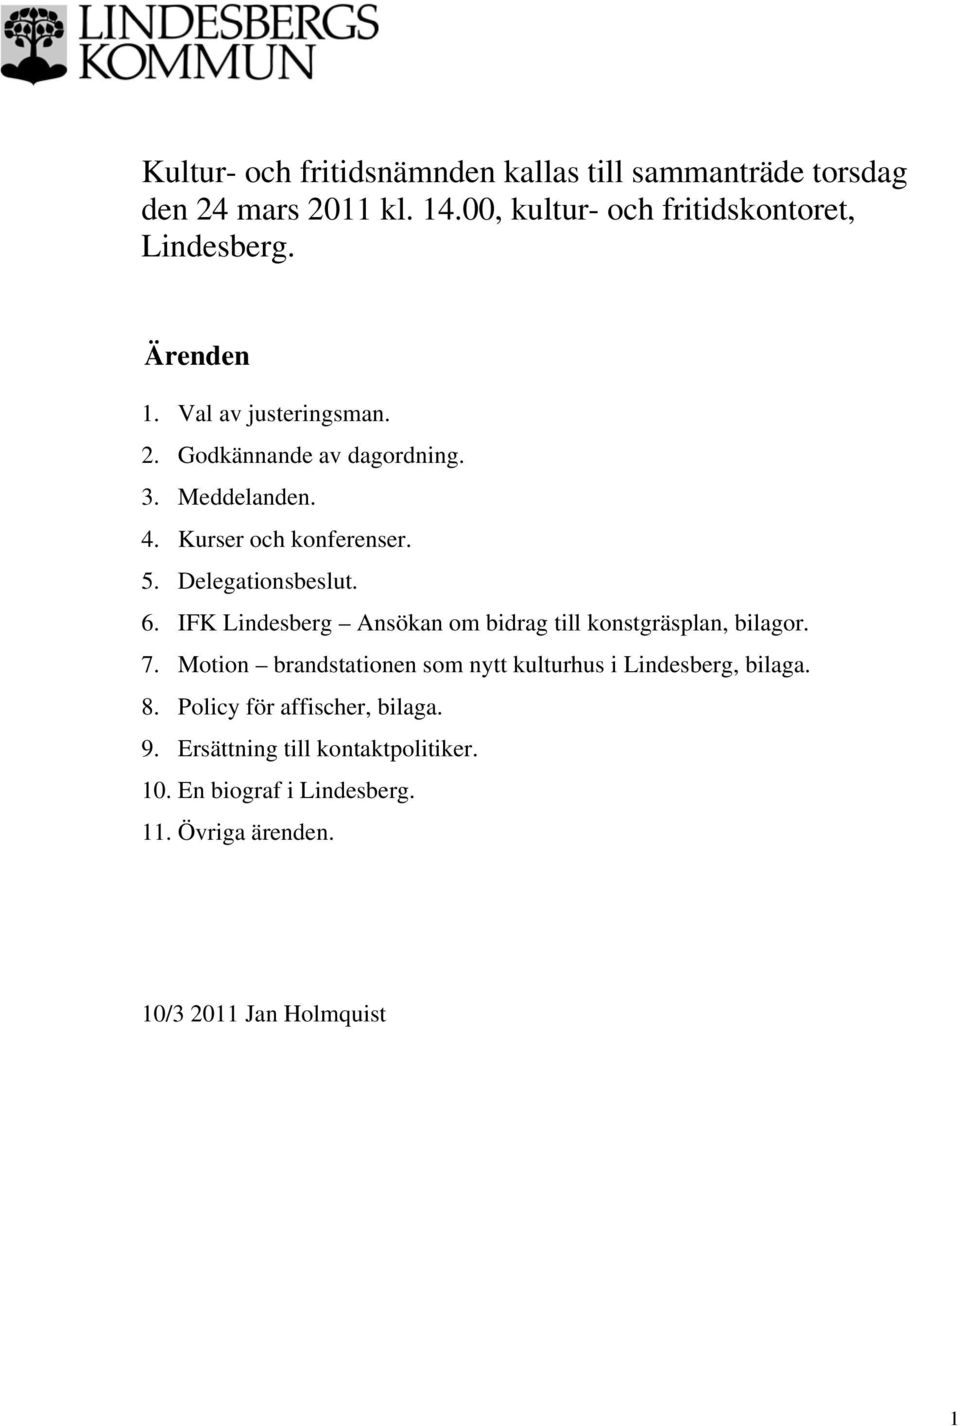 IFK Lindesberg Ansökan om bidrag till konstgräsplan, bilagor. 7. Motion brandstationen som nytt kulturhus i Lindesberg, bilaga. 8.